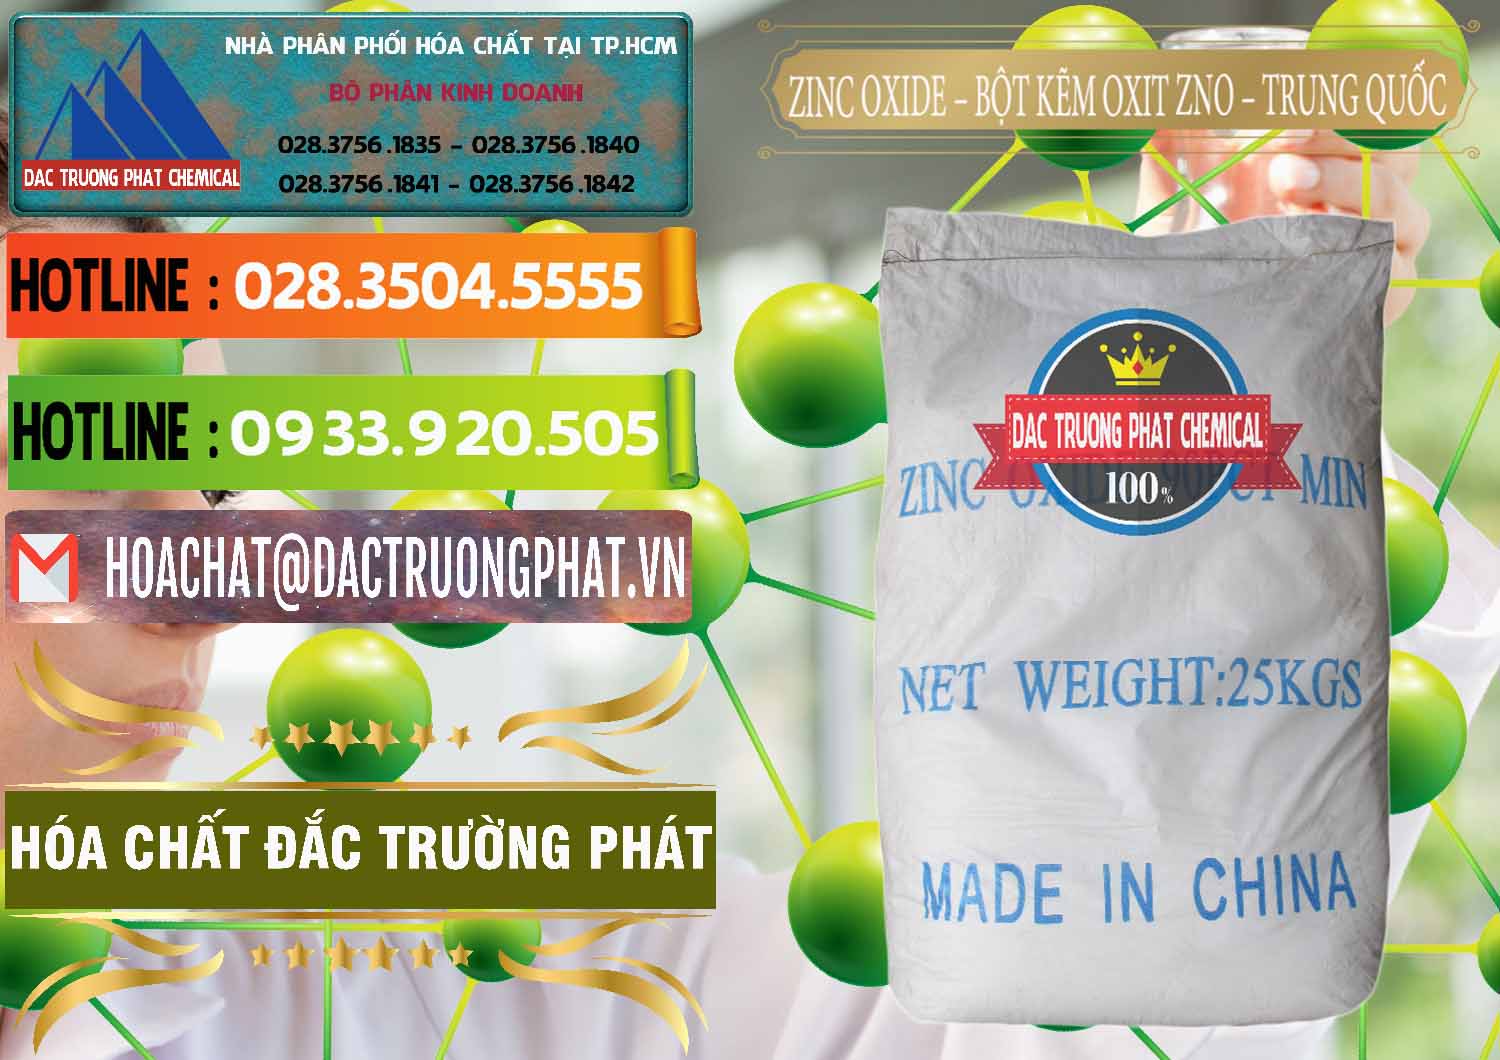 Công ty nhập khẩu ( bán ) Zinc Oxide - Bột Kẽm Oxit ZNO Trung Quốc China - 0182 - Cty bán - phân phối hóa chất tại TP.HCM - cungcaphoachat.com.vn